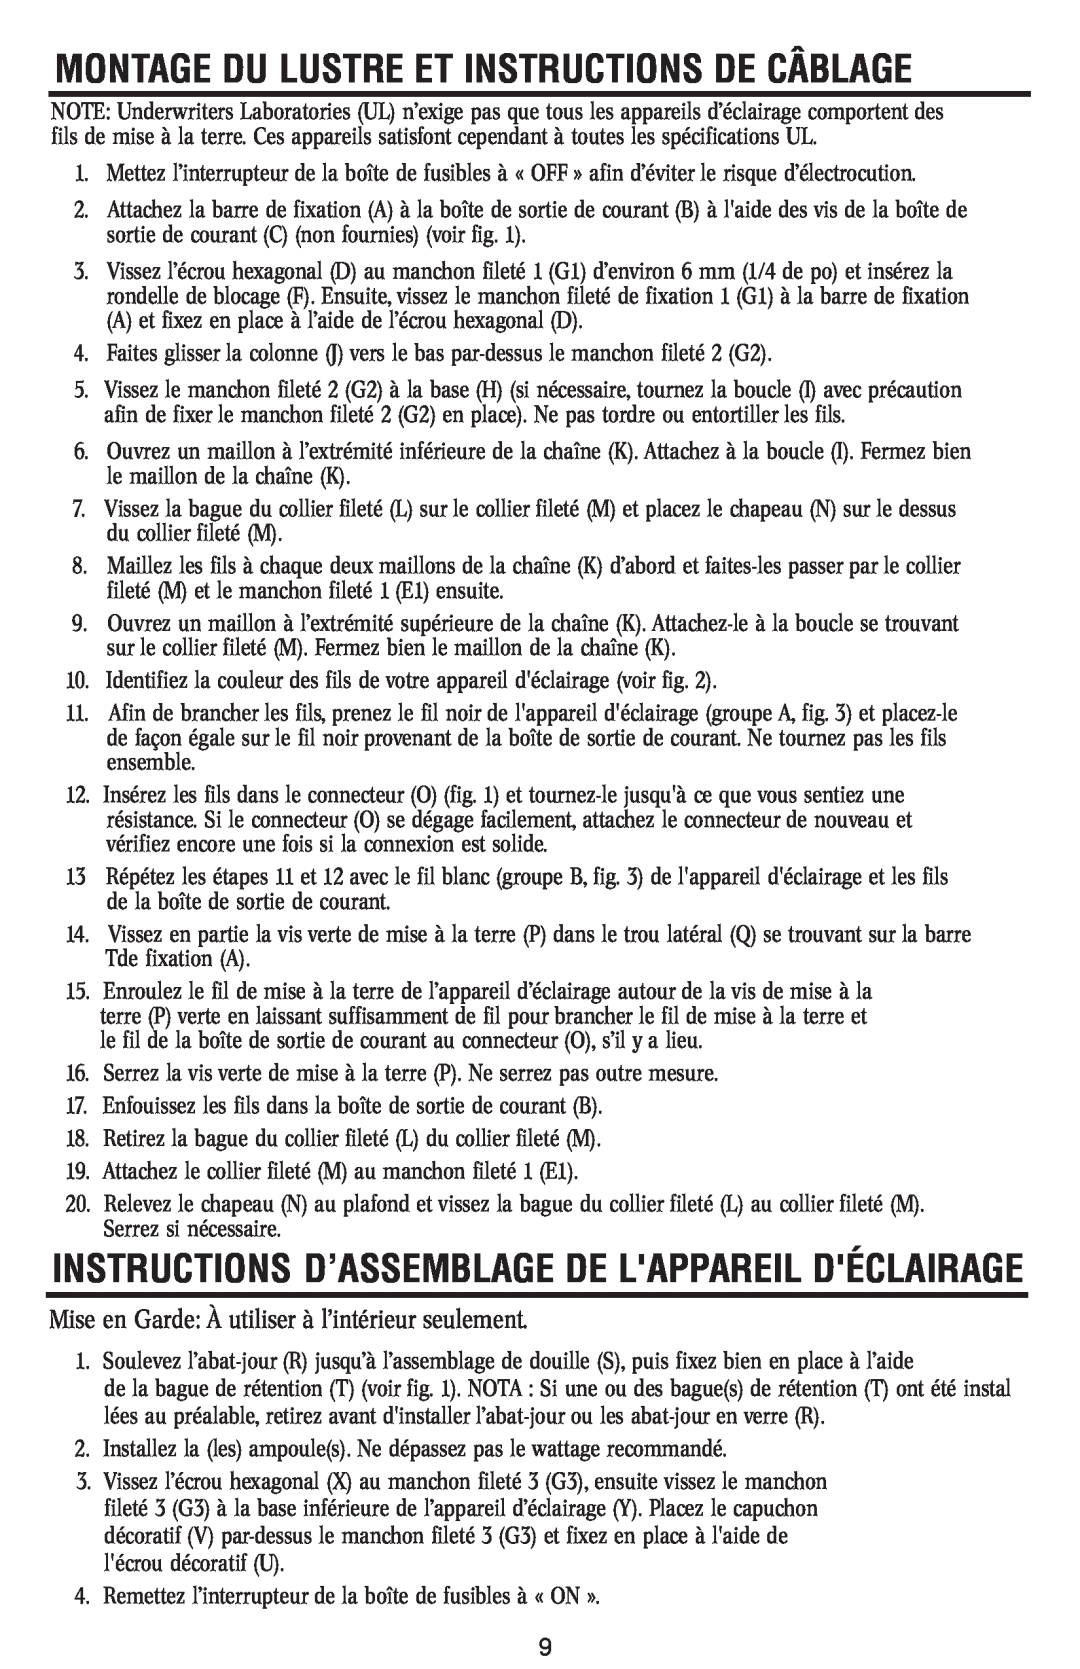 Westinghouse 120112 Instructions D’Assemblage De Lappareil Déclairage, Montage Du Lustre Et Instructions De Câblage 